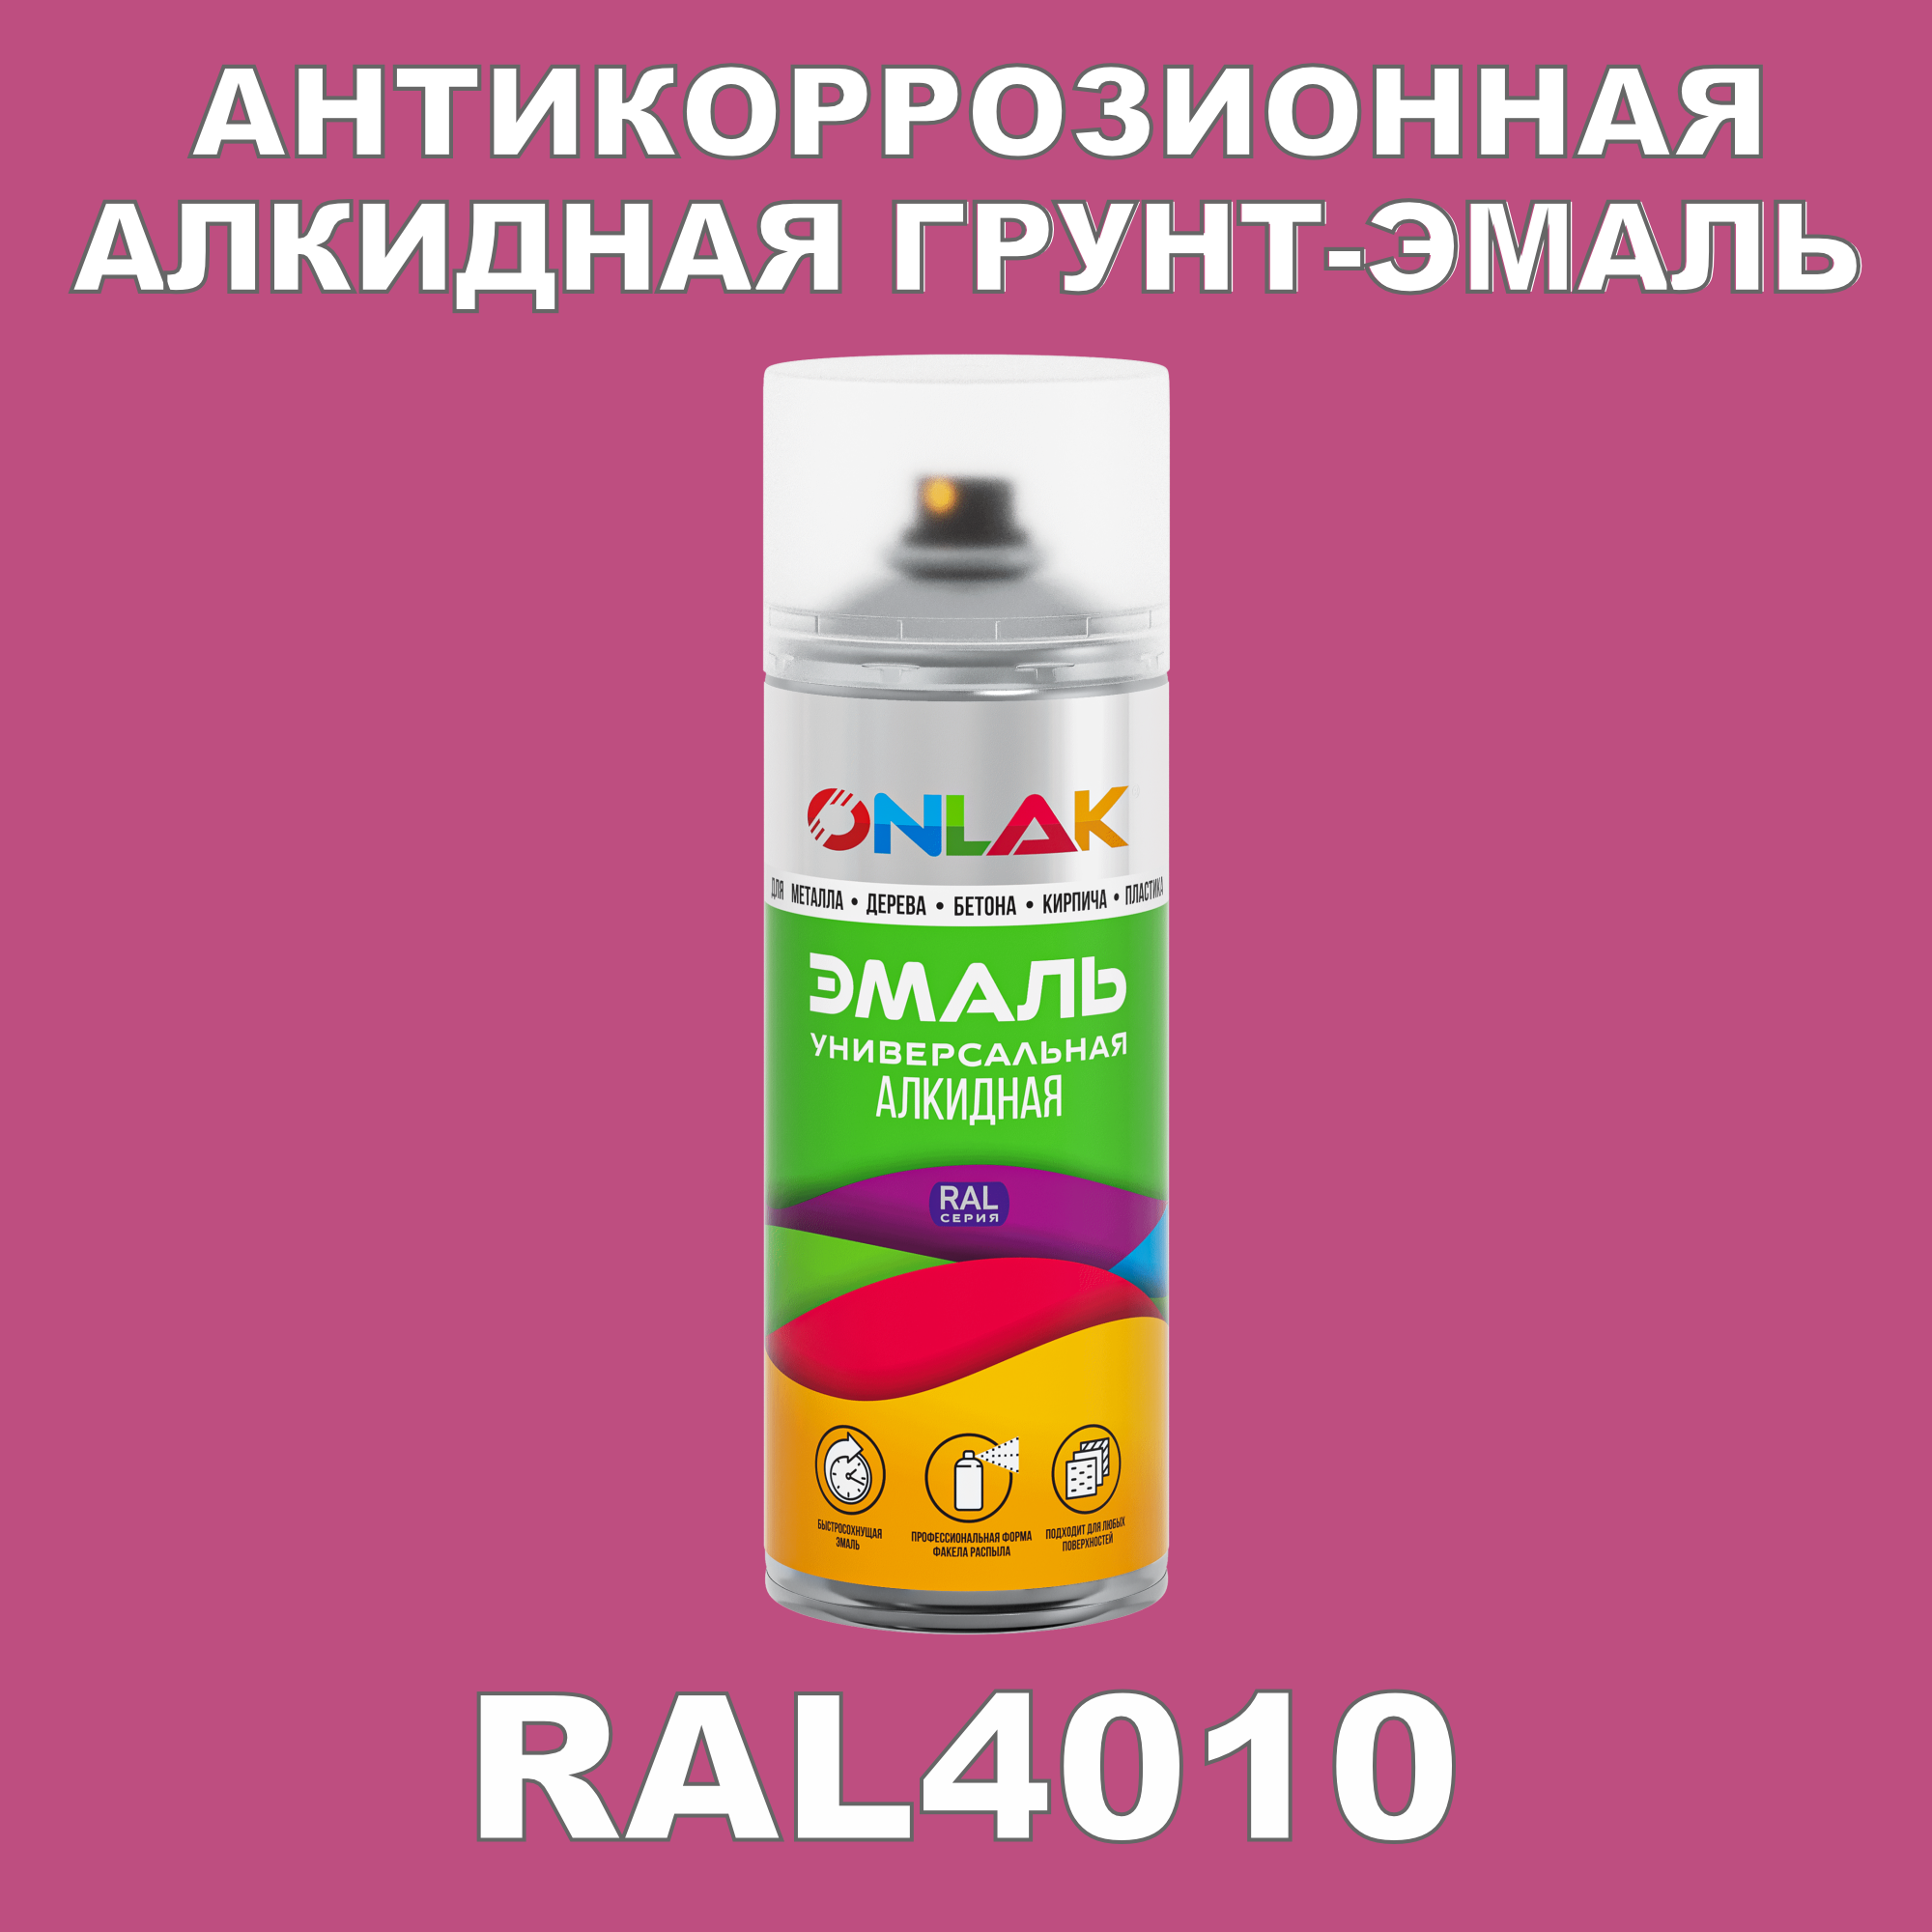 Антикоррозионная грунт-эмаль ONLAK RAL4010 полуматовая для металла и защиты от ржавчины artuniq color violet ной грунт для аквариума фиолетовый 1 кг